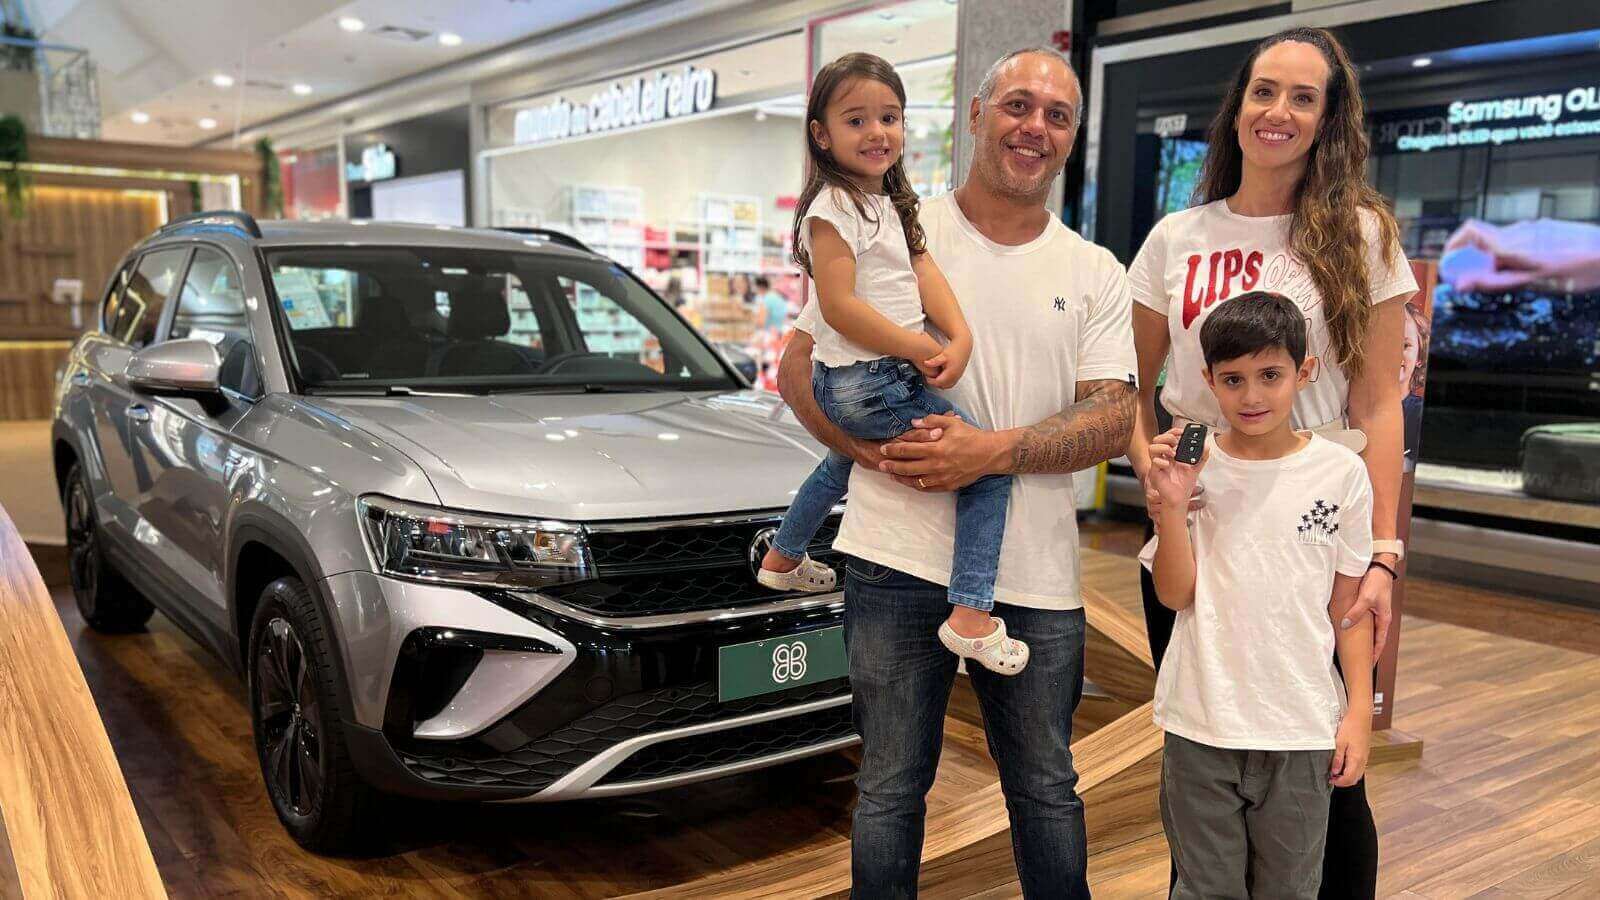 A imagem mostra uma família de quatro pessoas posando ao lado de um carro novo em um shopping. O grupo inclui um homem, uma mulher, uma menina e um menino.